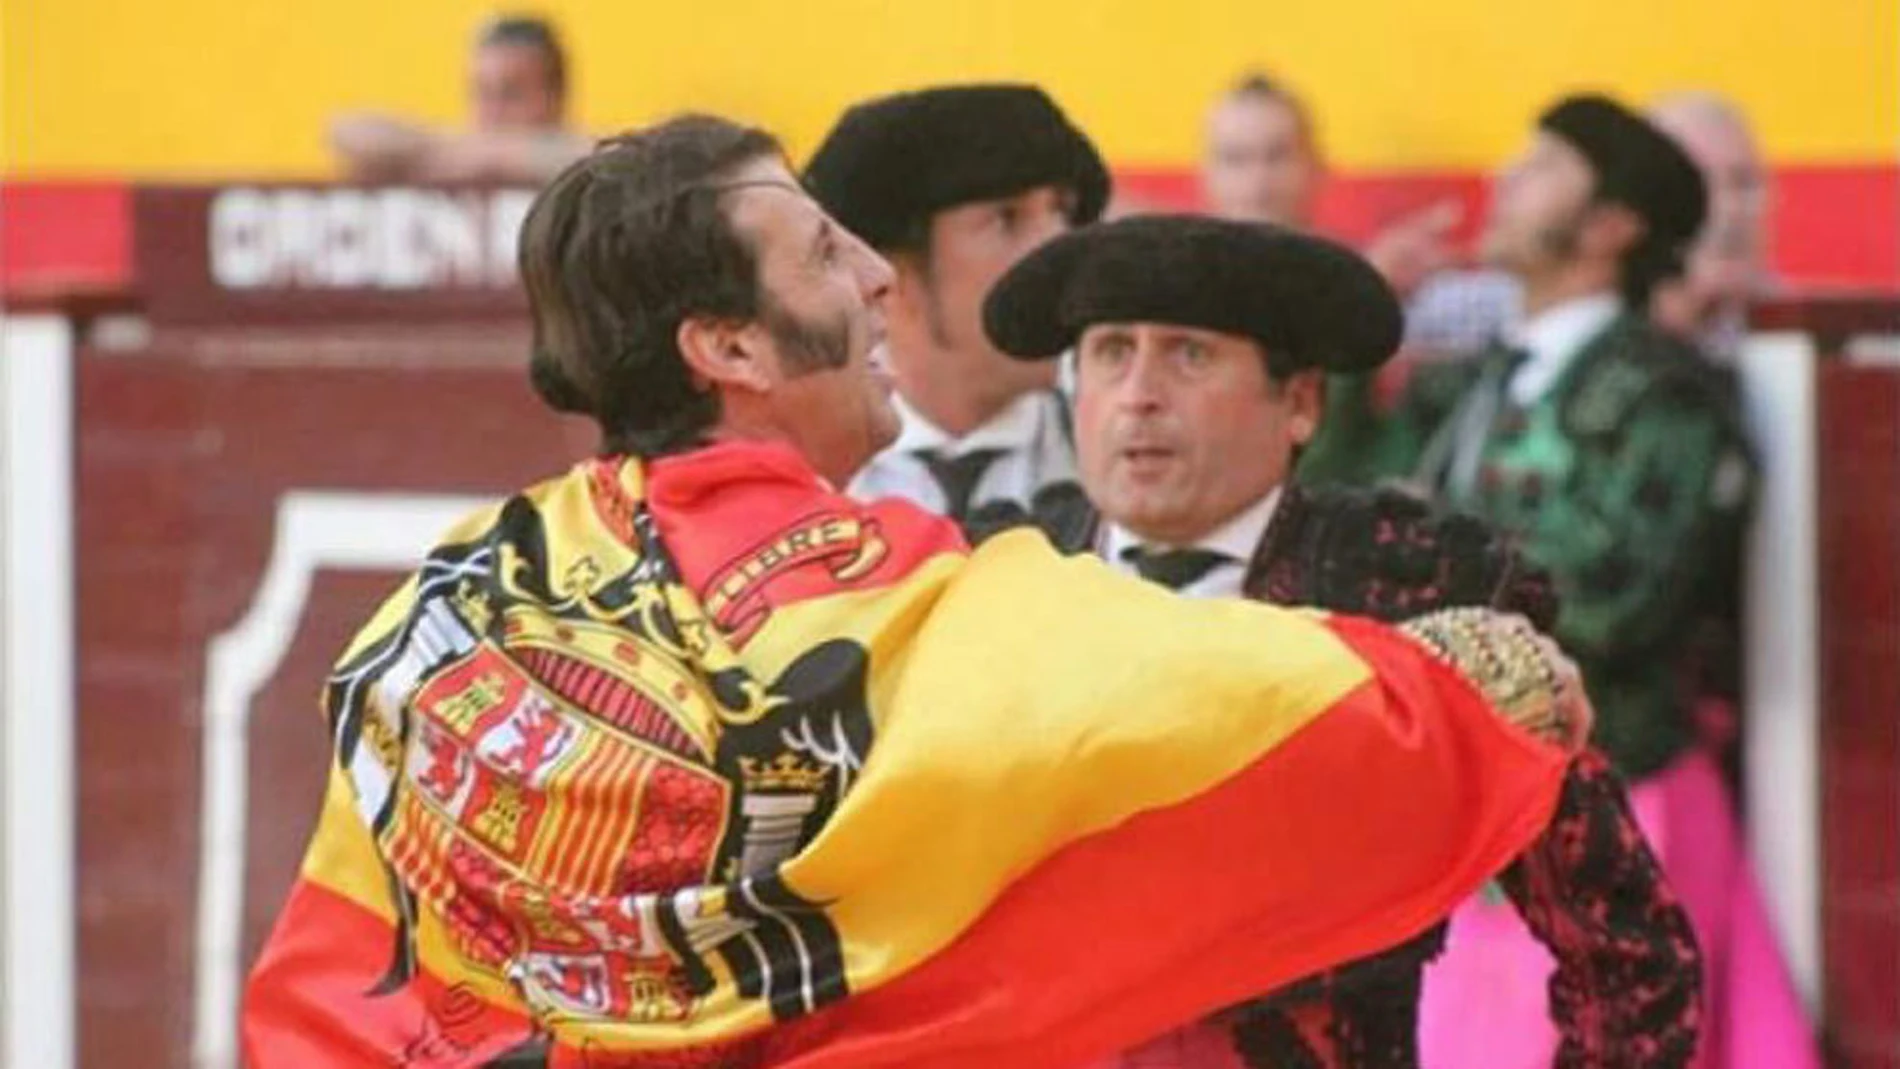 Juan José Padilla vistiendo la bandera franquista ayer en Villacarrillo